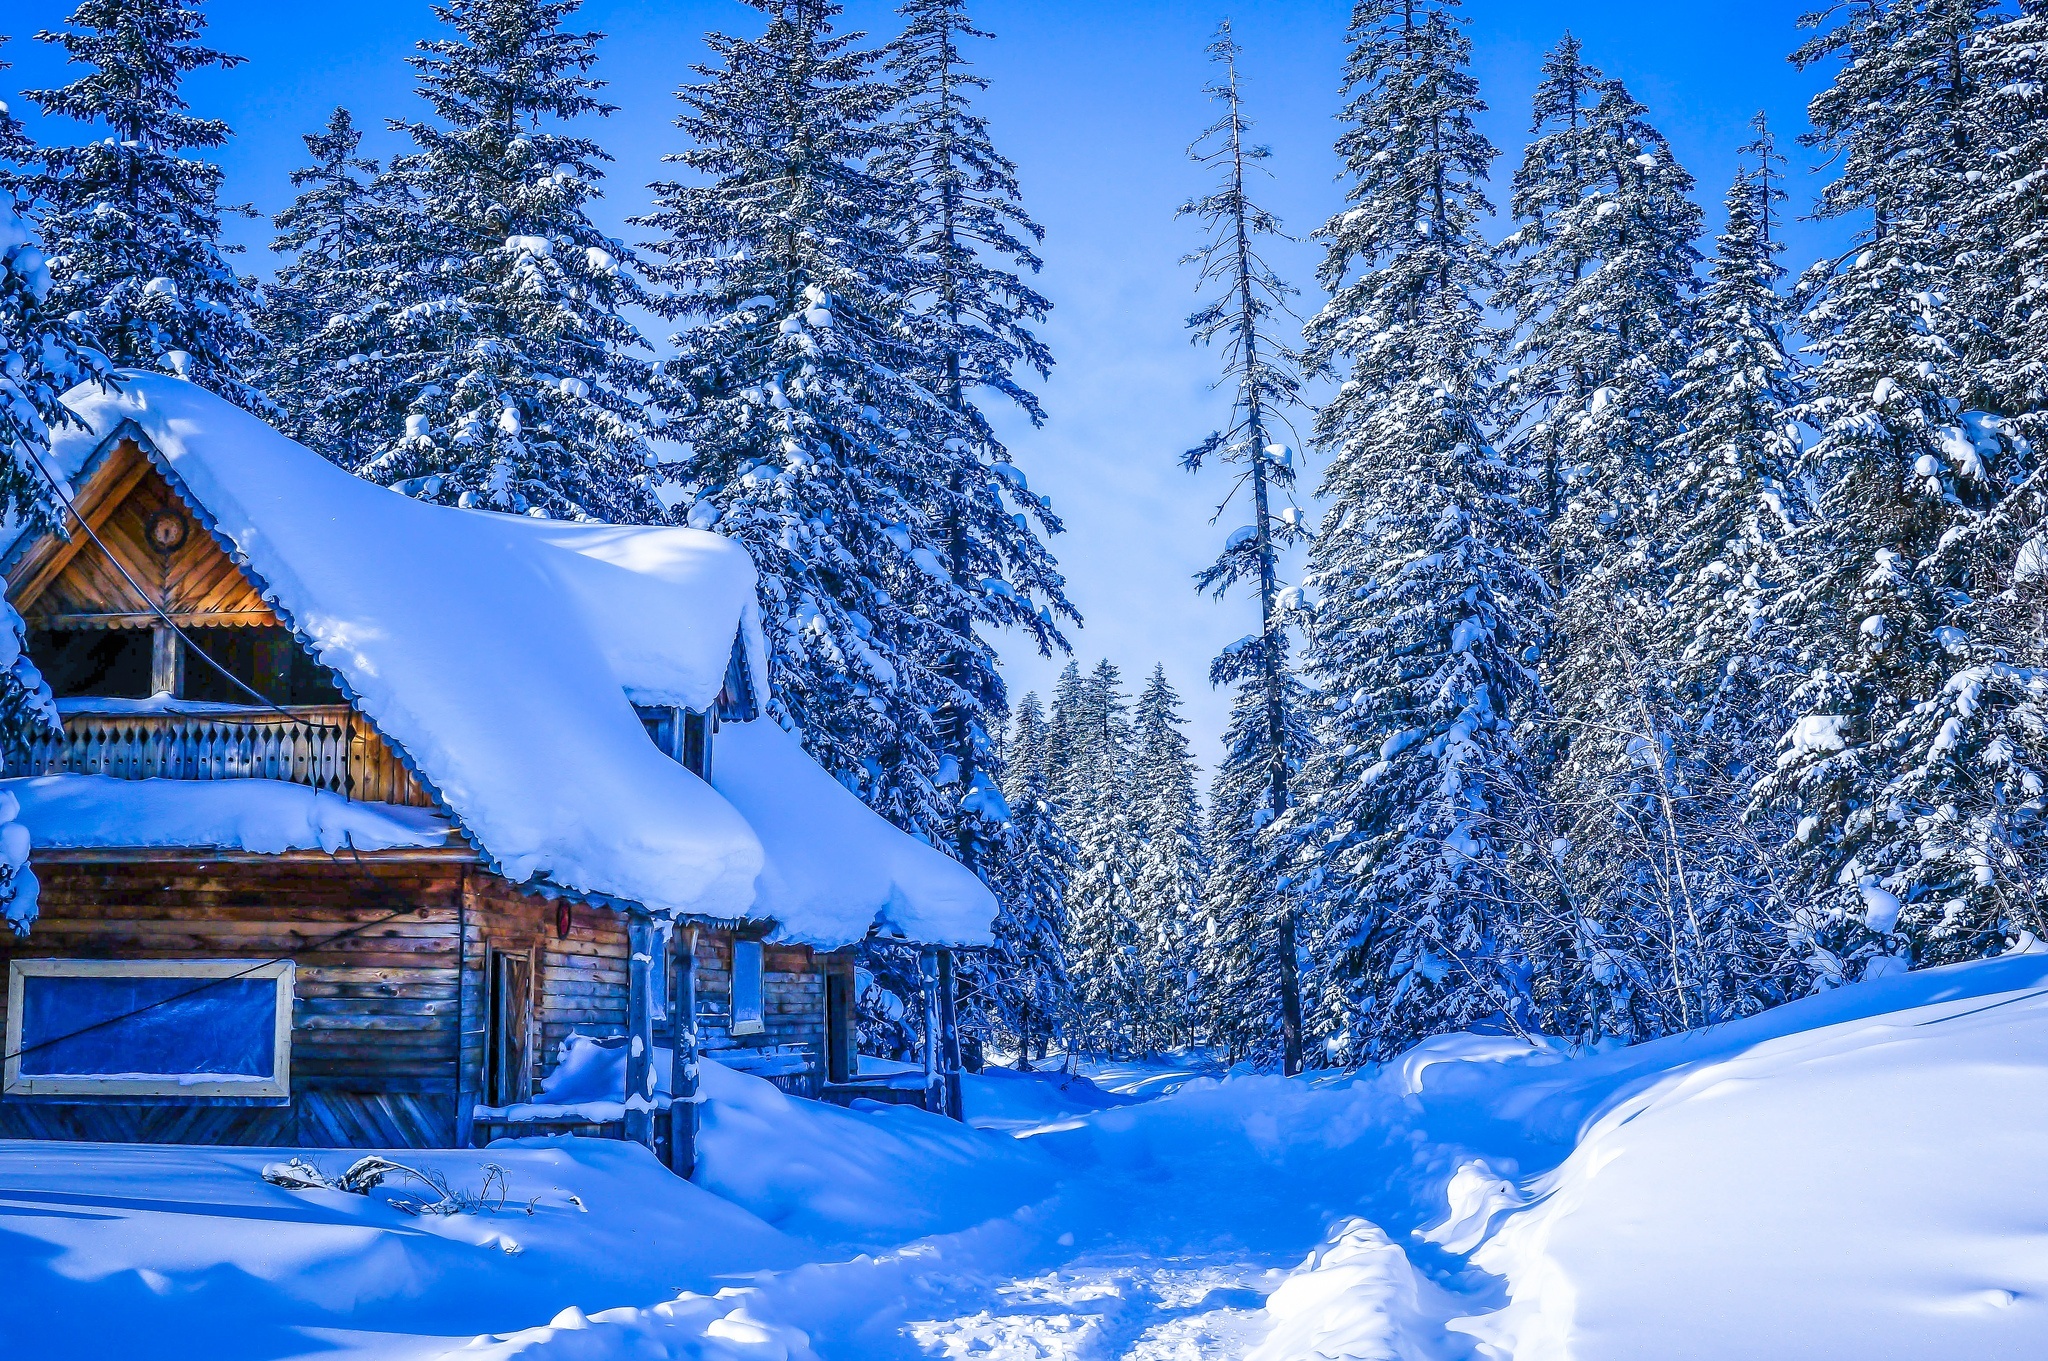 Zima, Dom, Ośnieżone, Drzewa, Śnieg